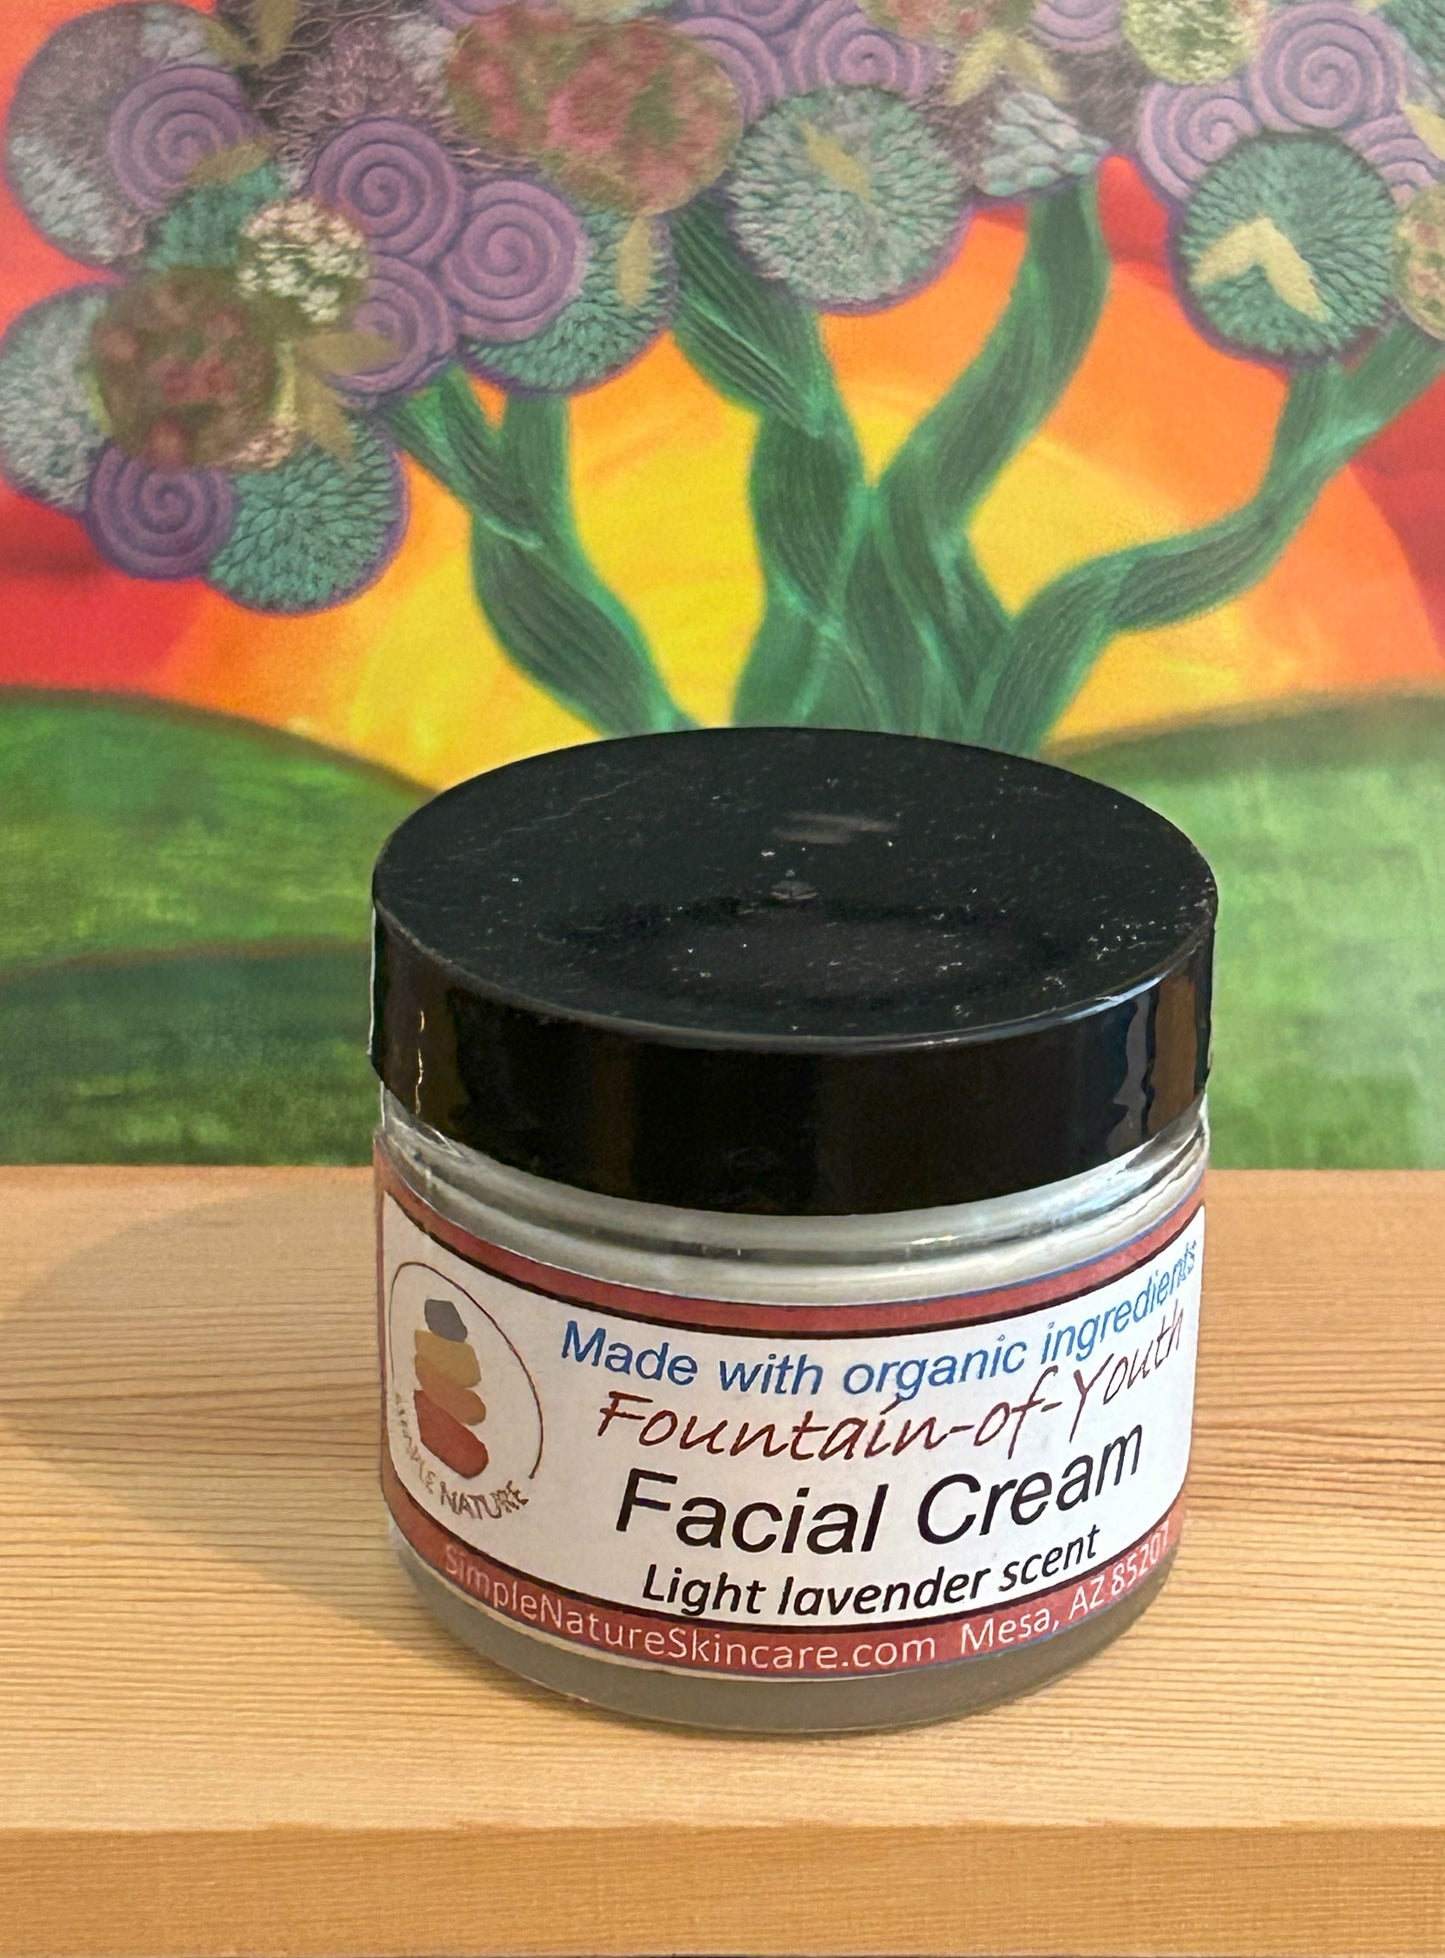 Fountain-of-Youth Facial Cream